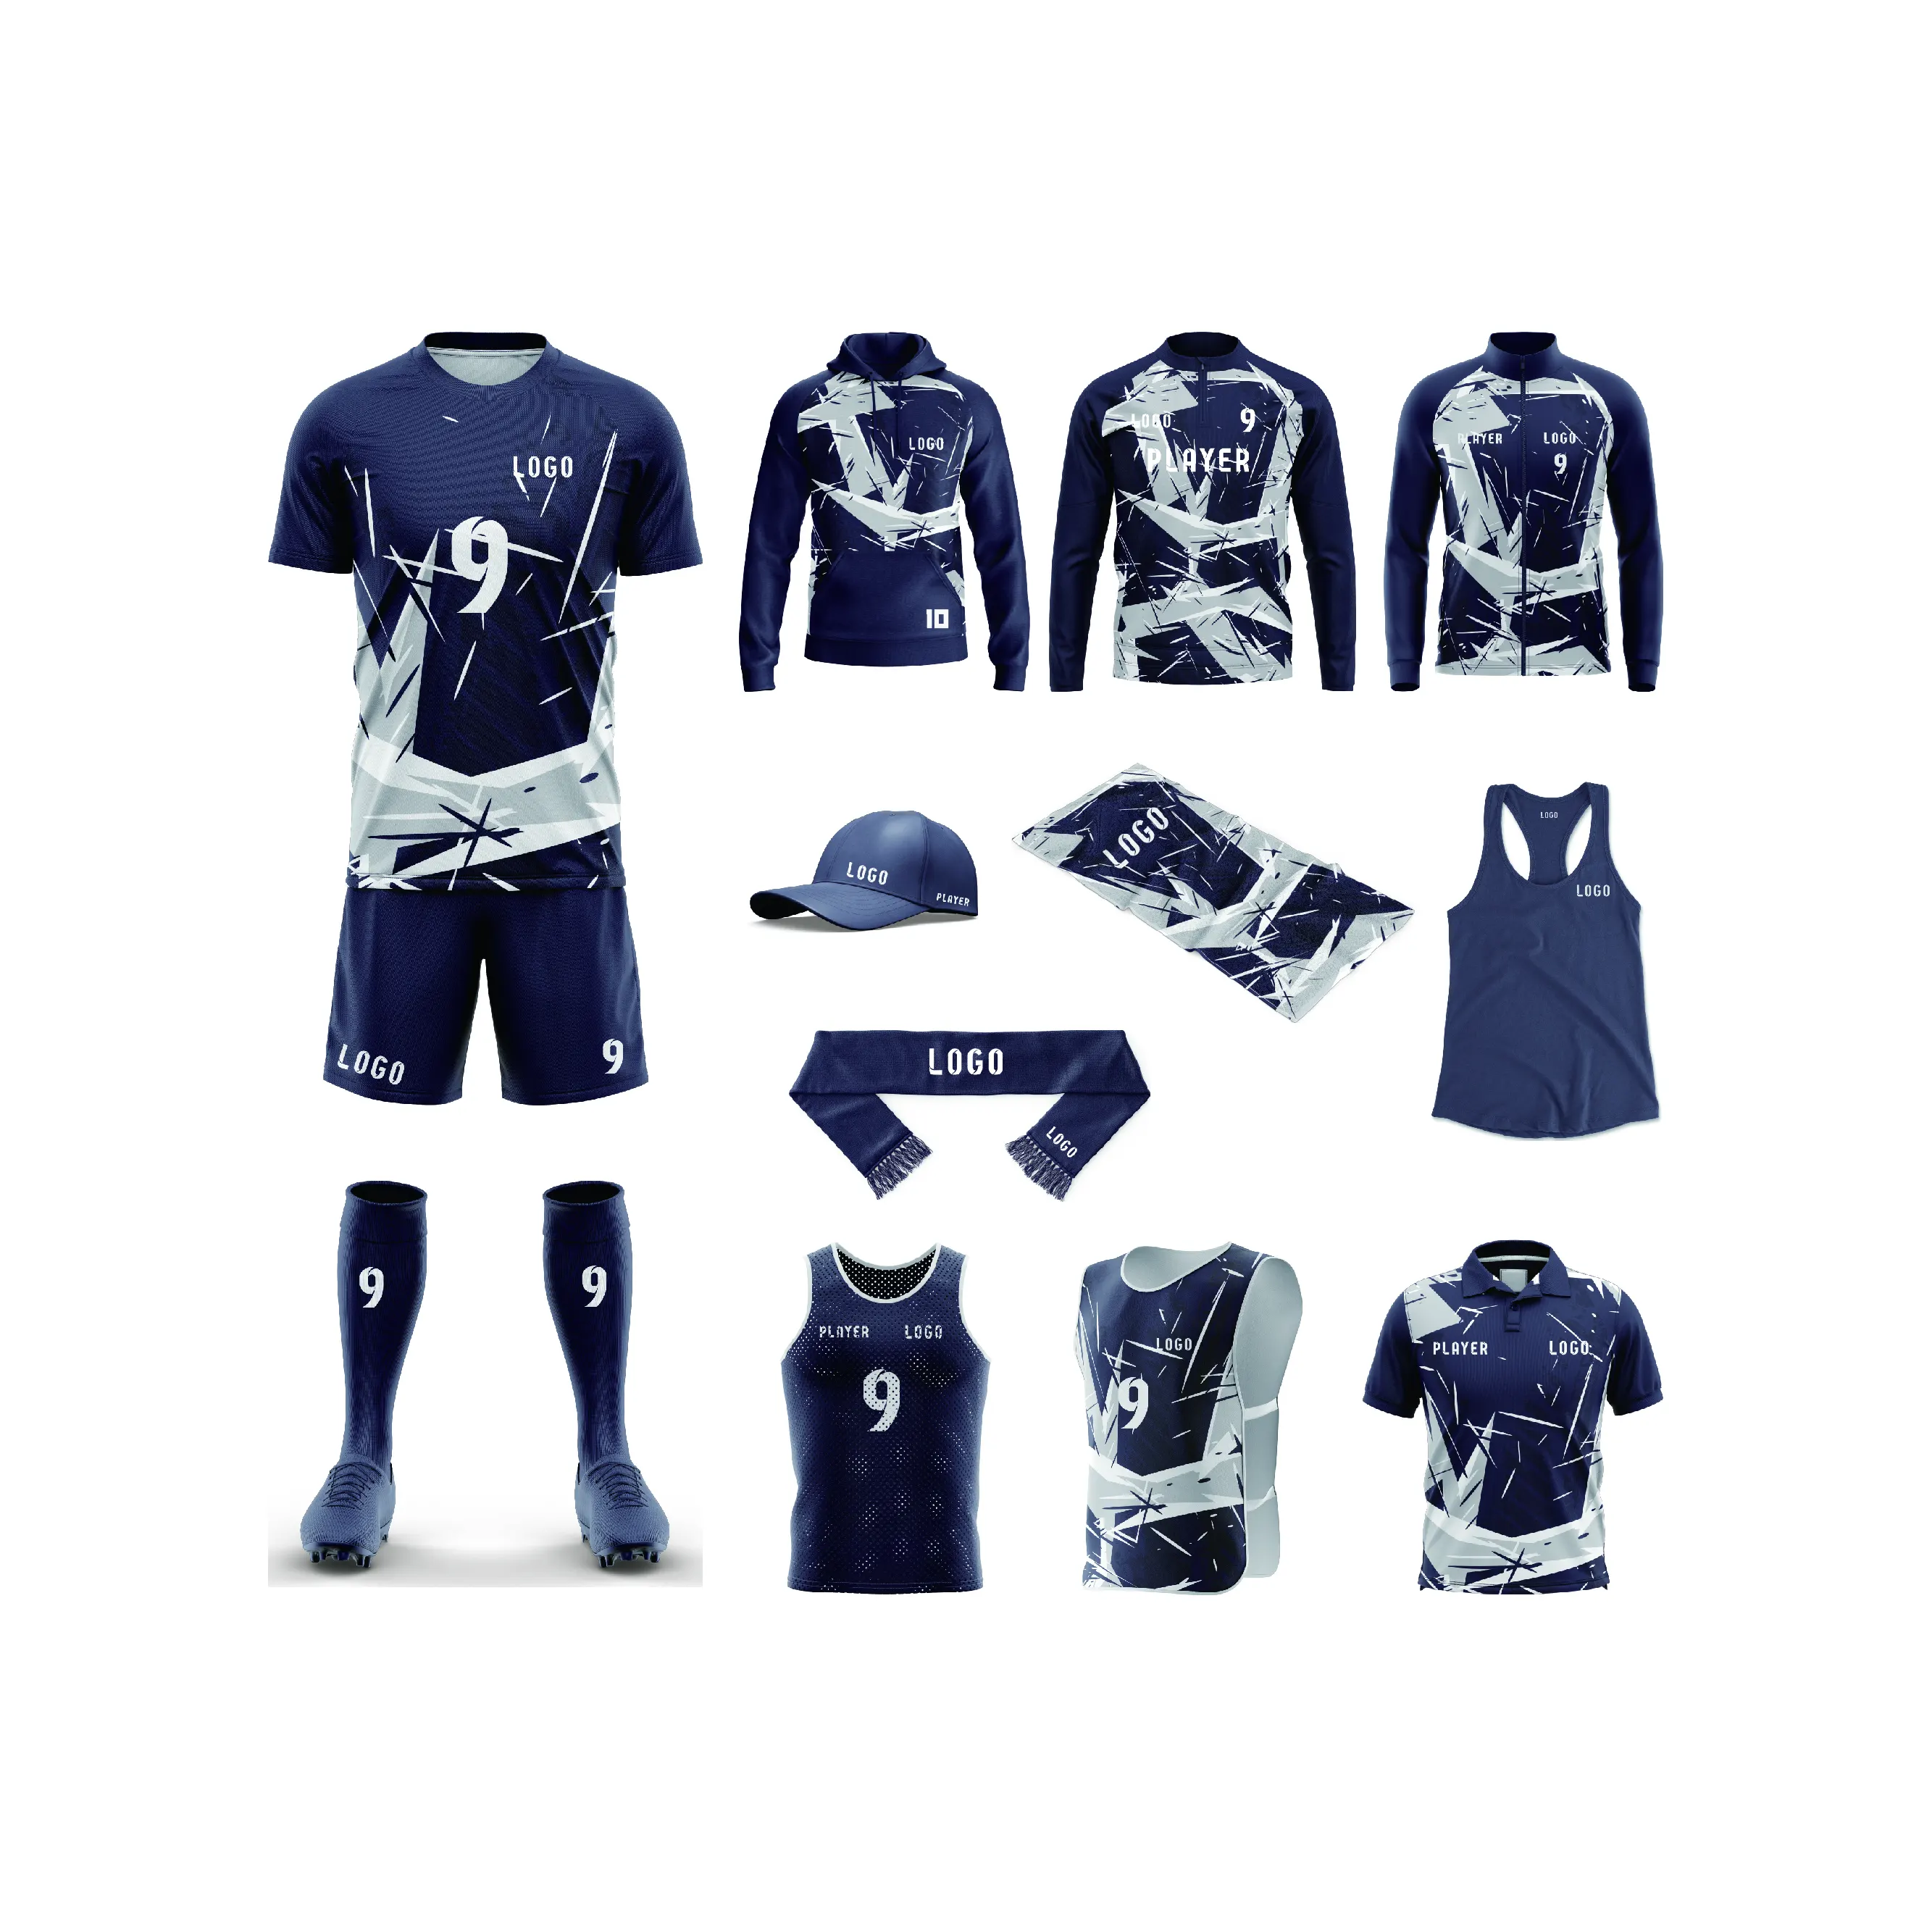 Uniforme de fútbol de moda, de alta calidad uniforme de fútbol, uniforme de fútbol Deportivo de entrenamiento de partido personalizado